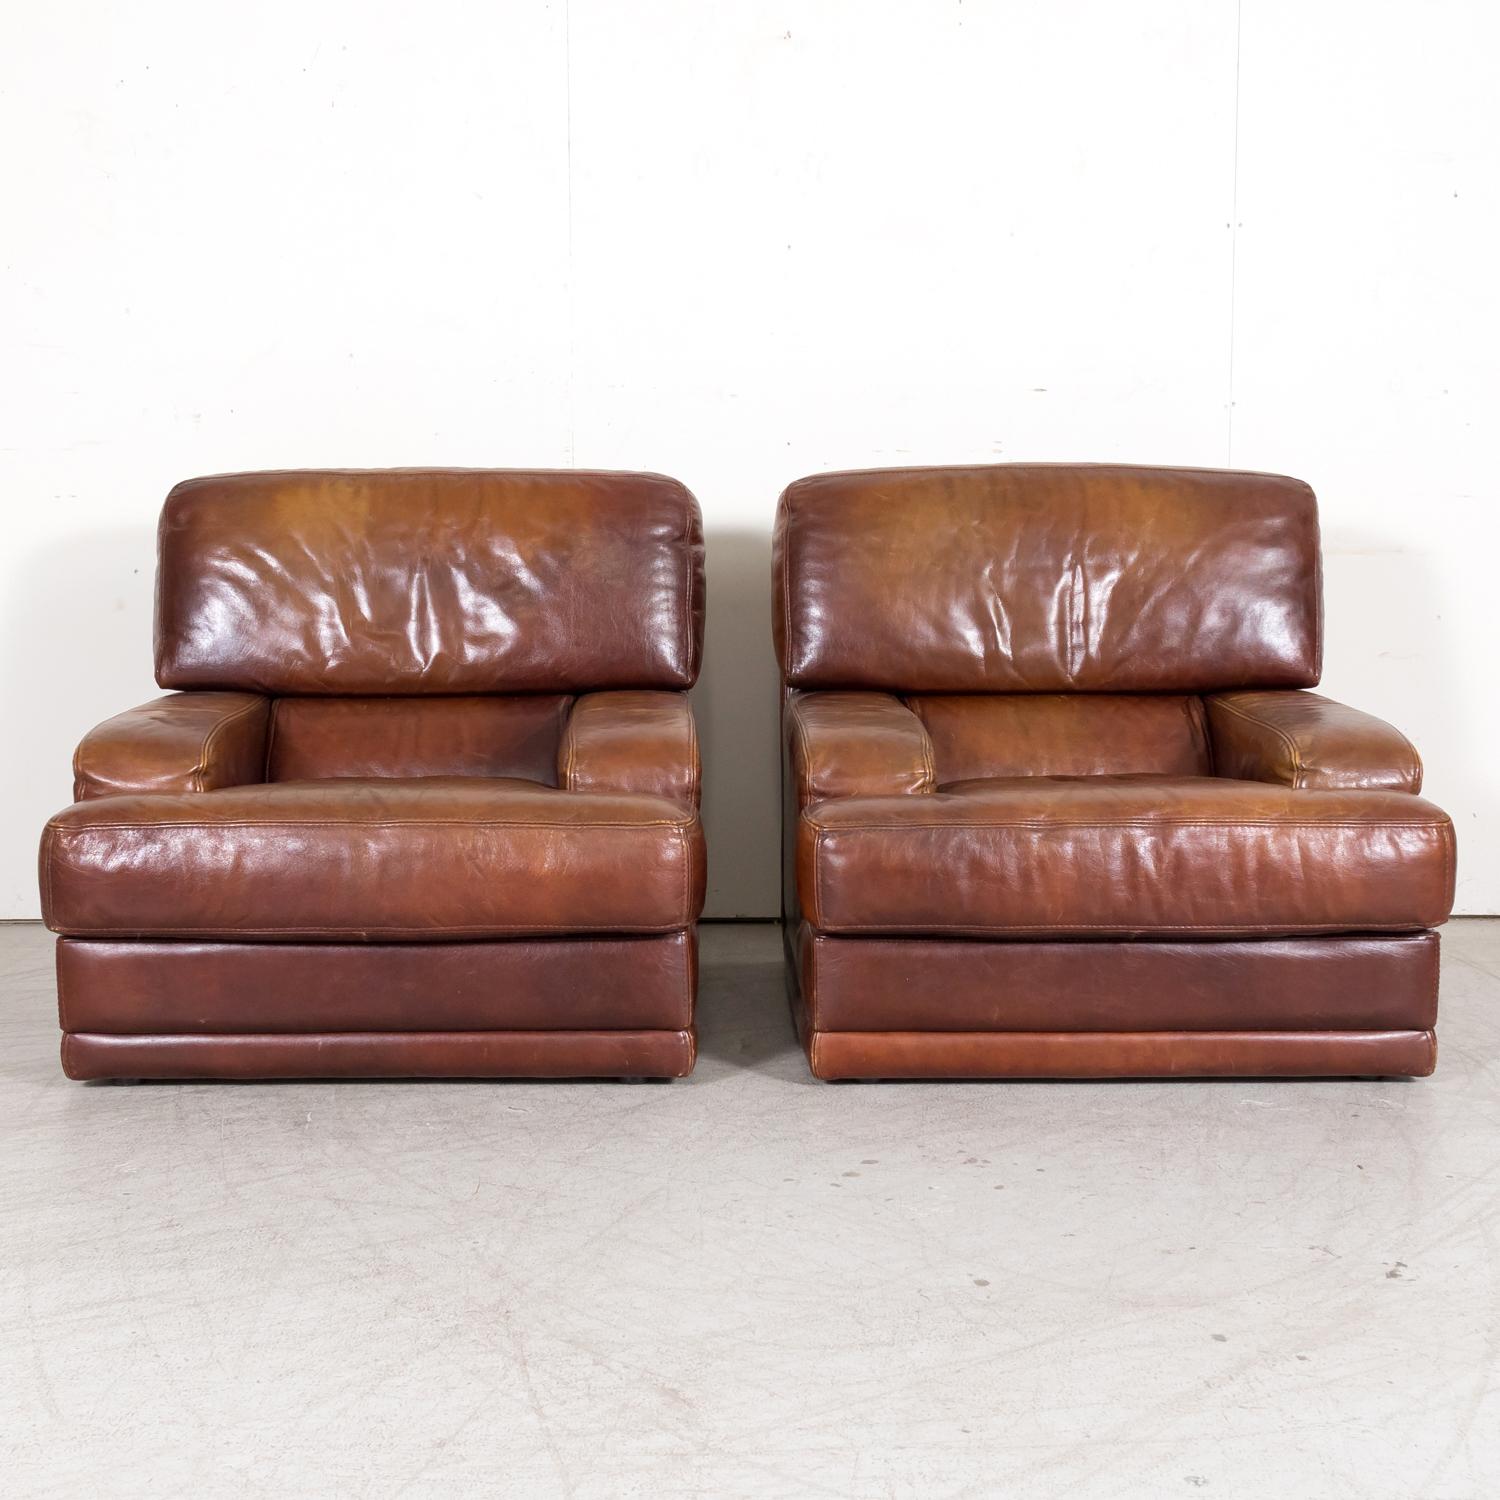 Une paire de chaises de salon en cuir cognac patiné surdimensionné de la fin du 20e siècle moderne français, vers les années 1970. Ces fabuleux fauteuils vintage en cuir, aux lignes contemporaines, font de la fonction un sérieux défaut de la mode !